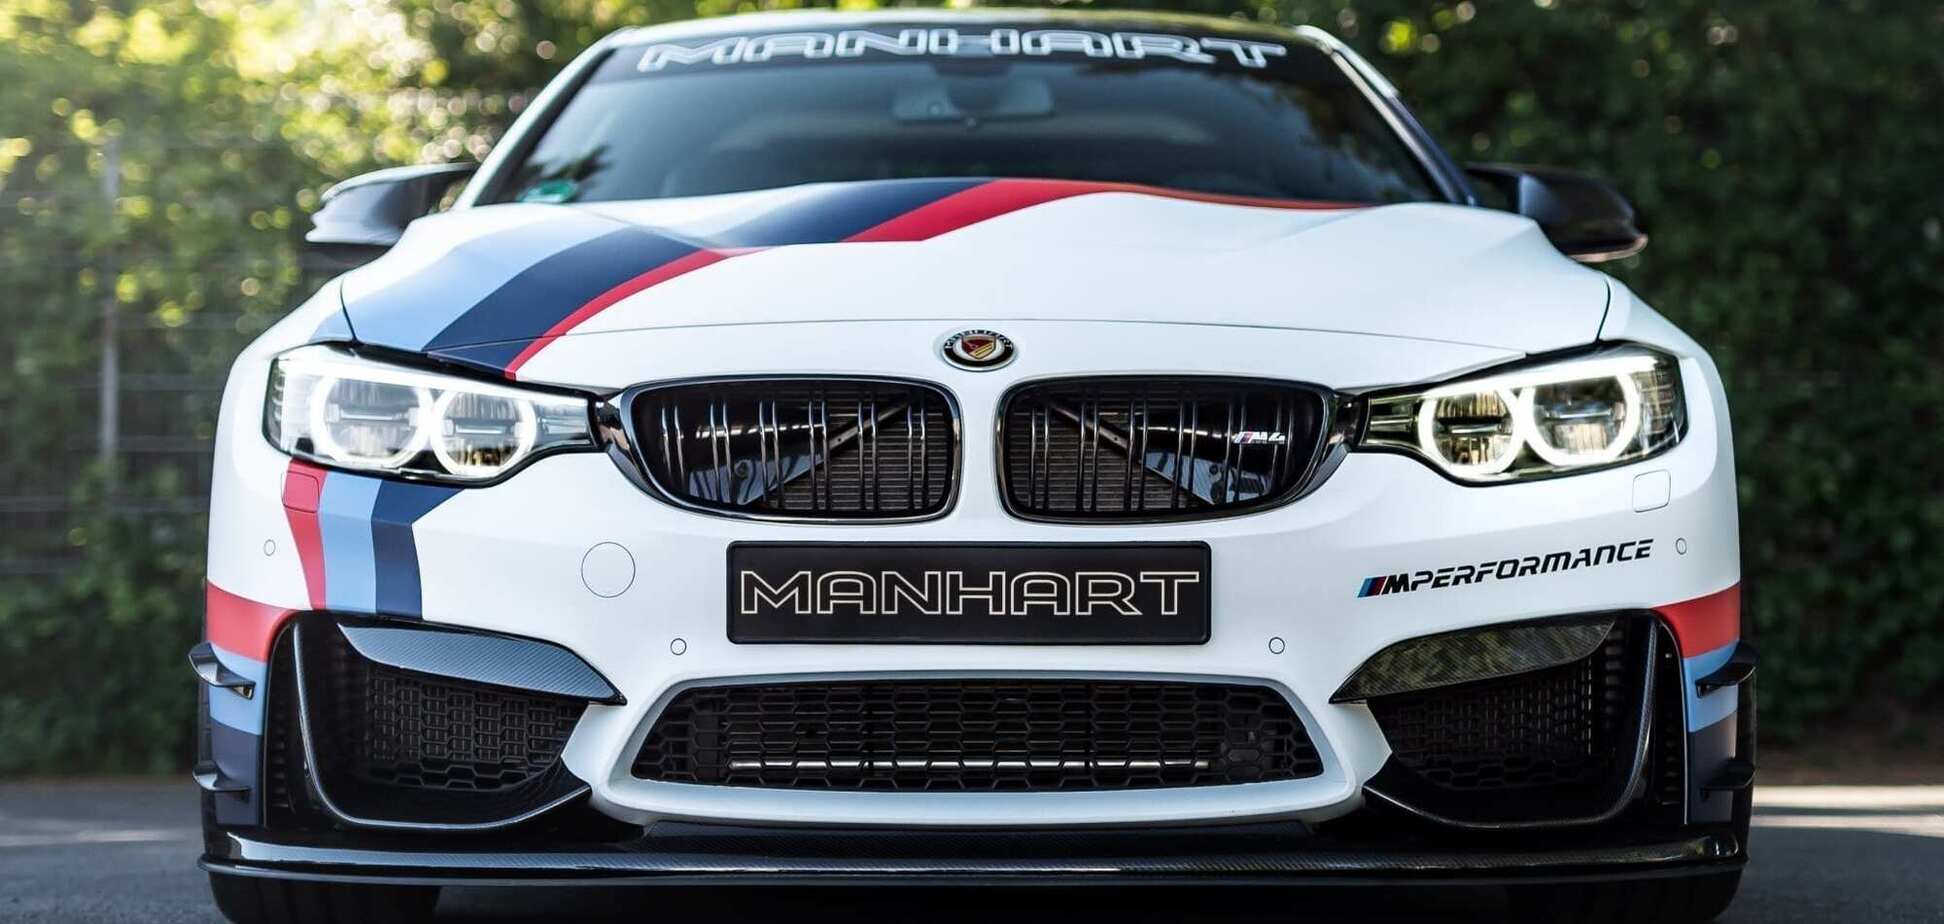 Тюнинг-ателье Manhart построило 'незаконный' BMW